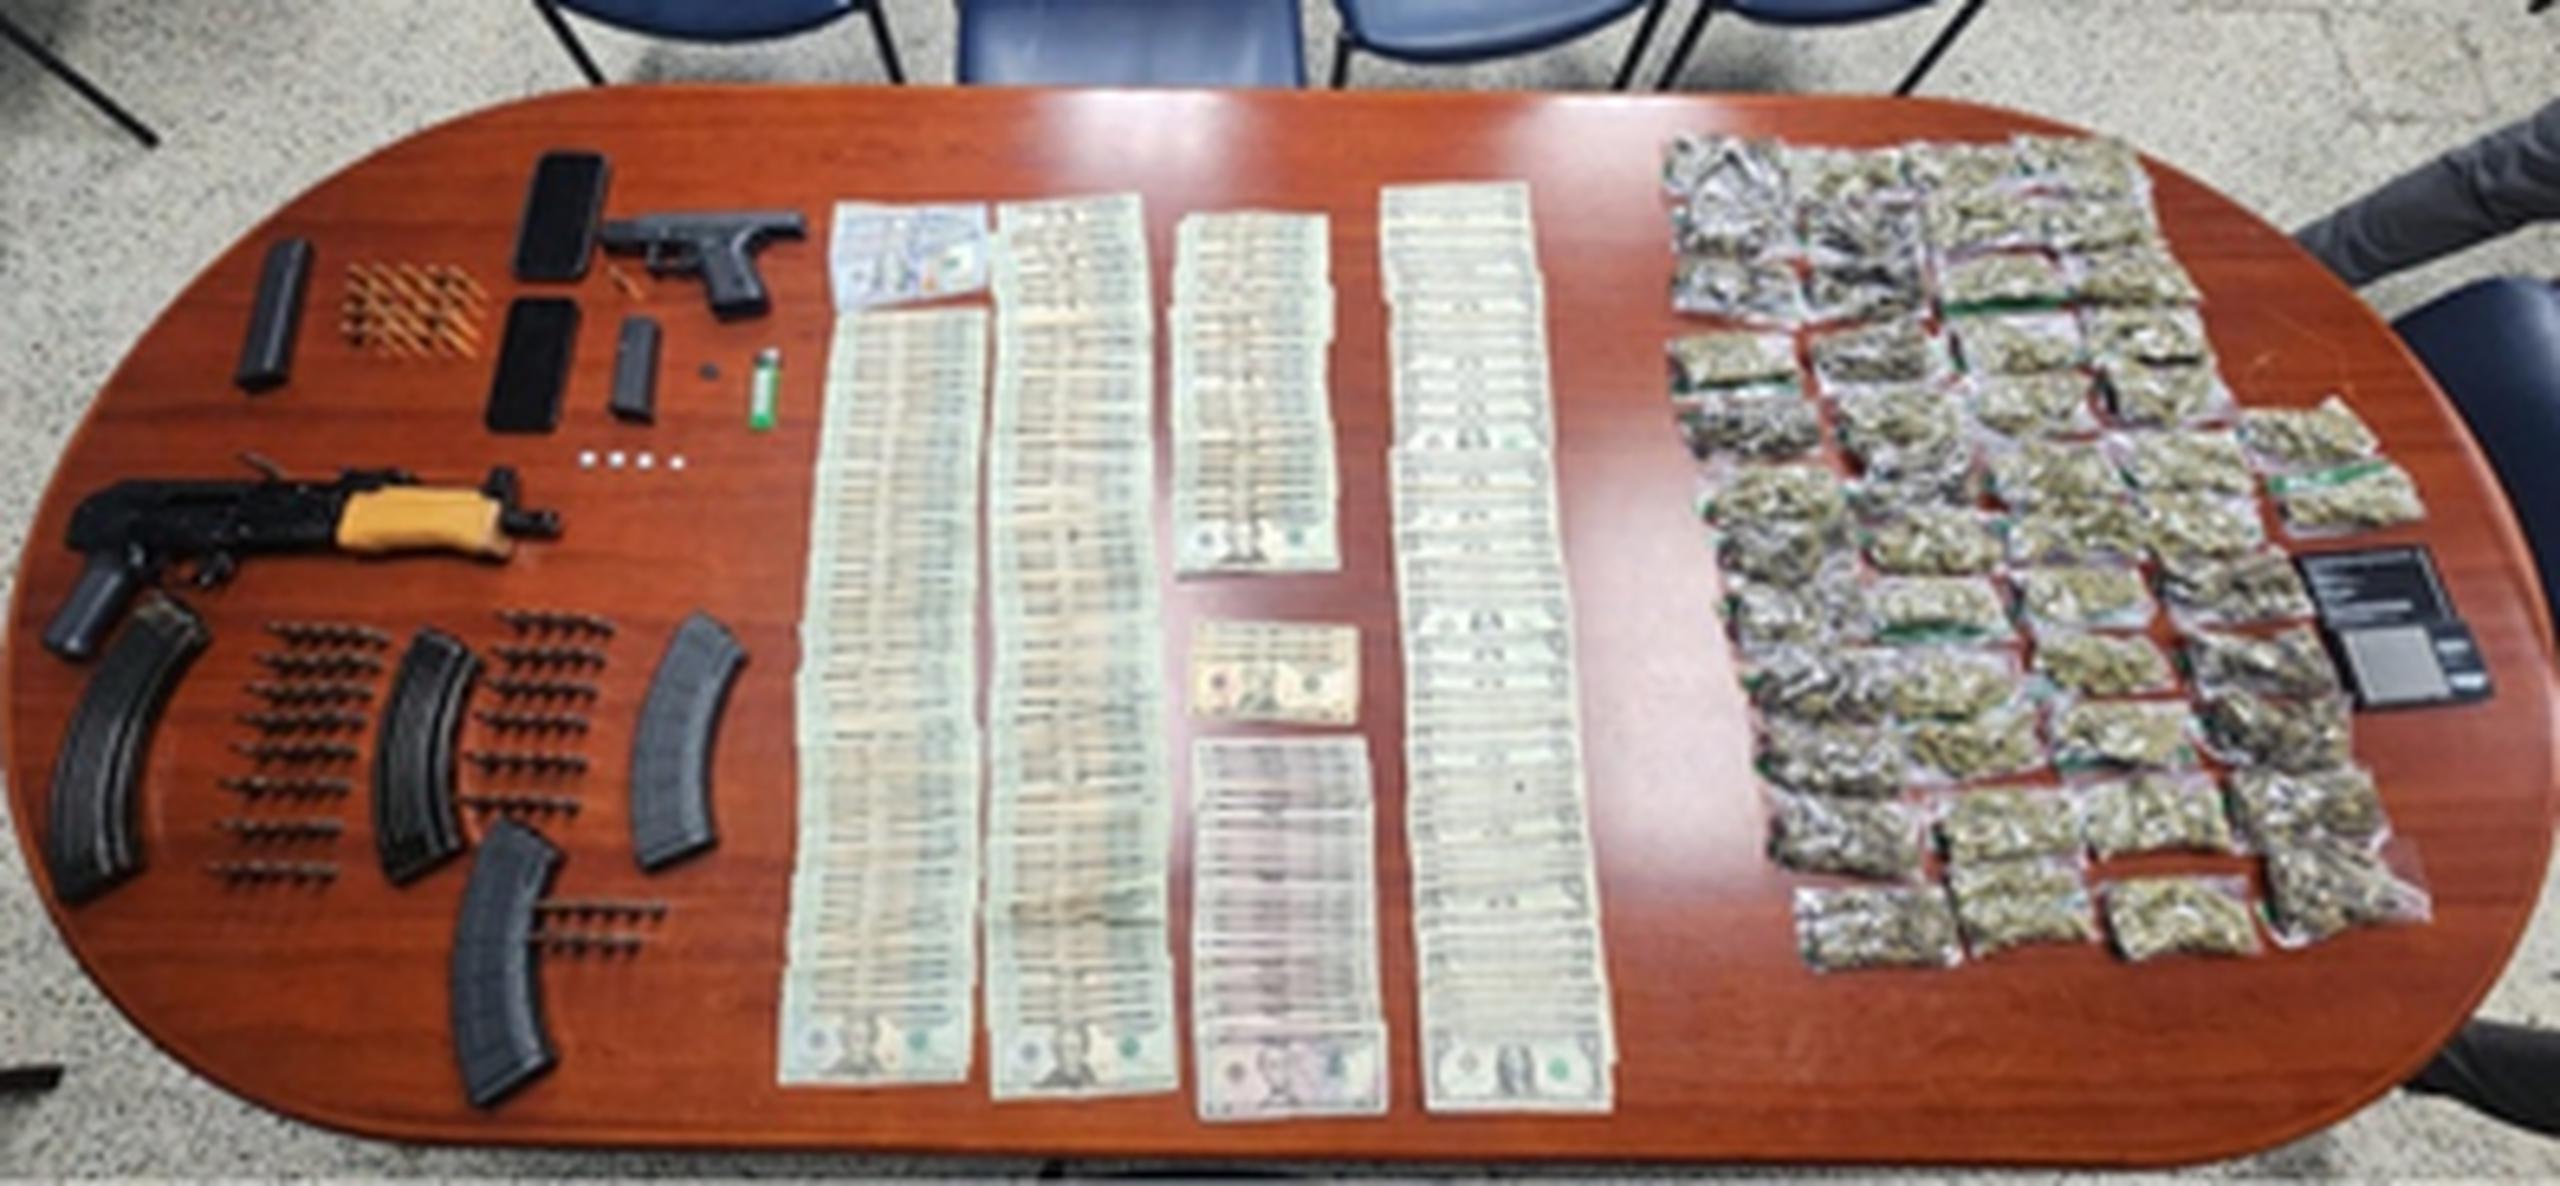 Armas y droga ocupada a tres jóvenes en Toa Baja (Suministrada)